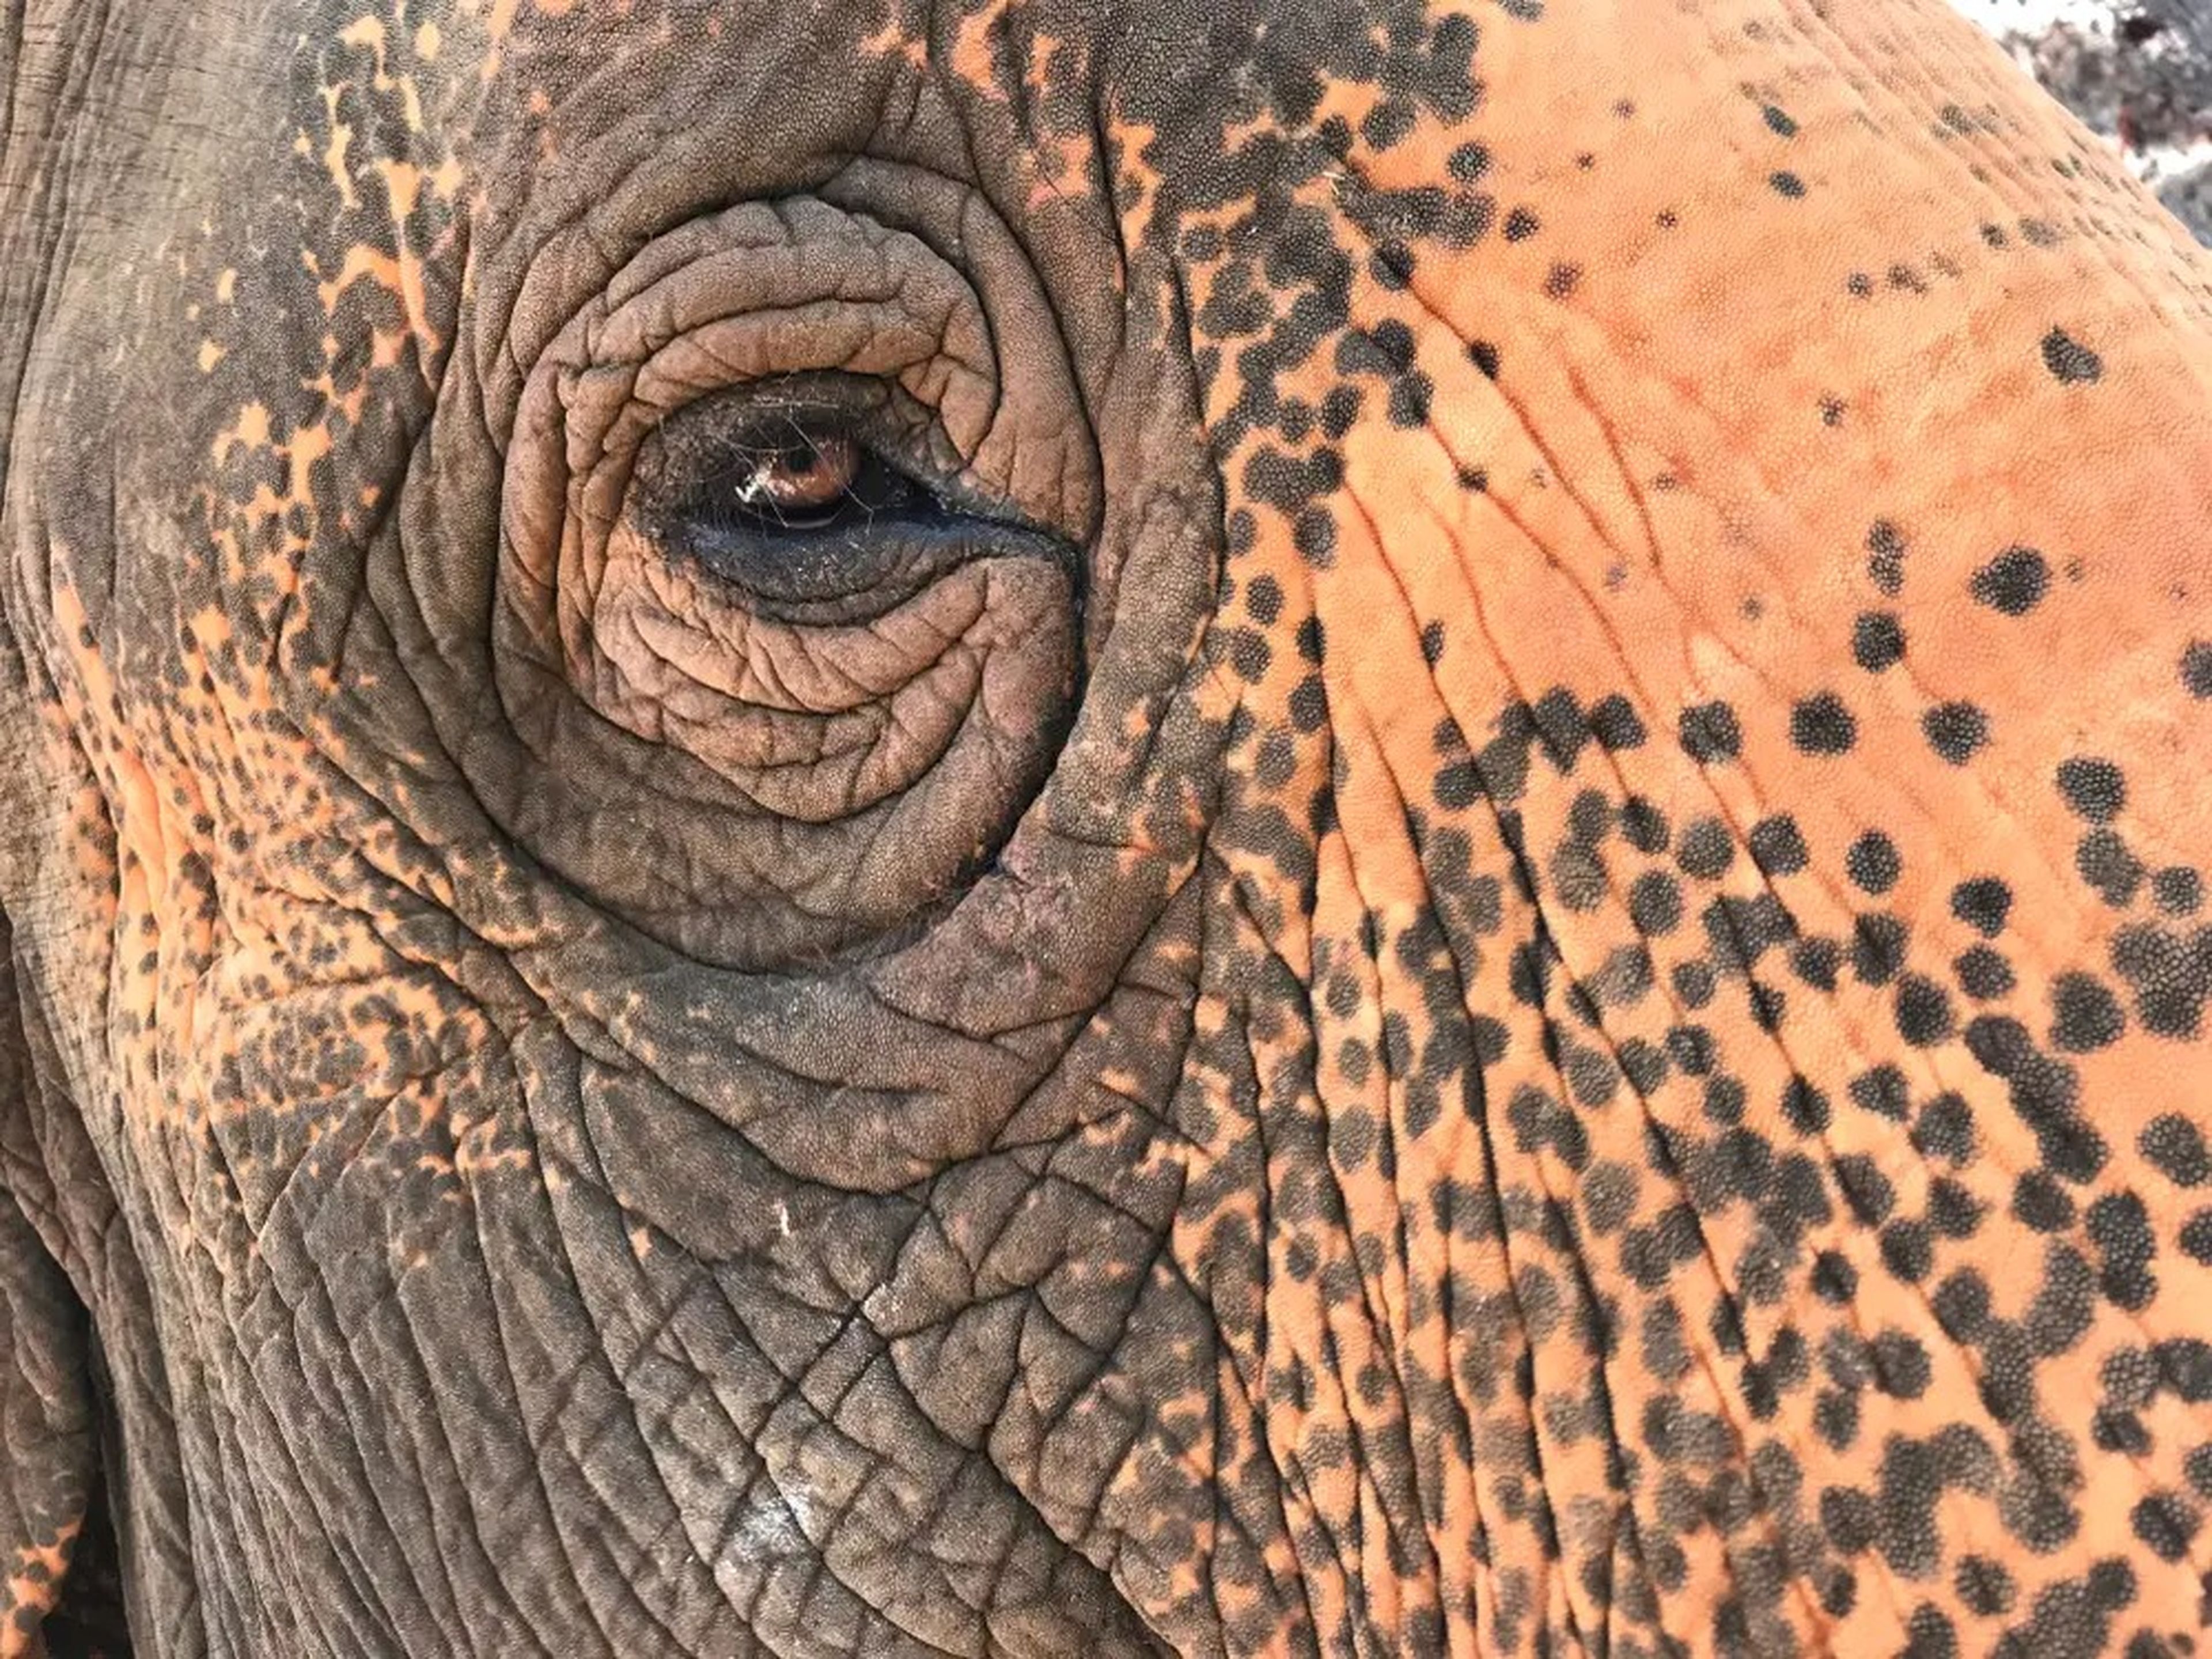 Los elefantes de avanzada edad tienen más arrugas alrededor de los ojos además de sufrir decoloración en la piel.